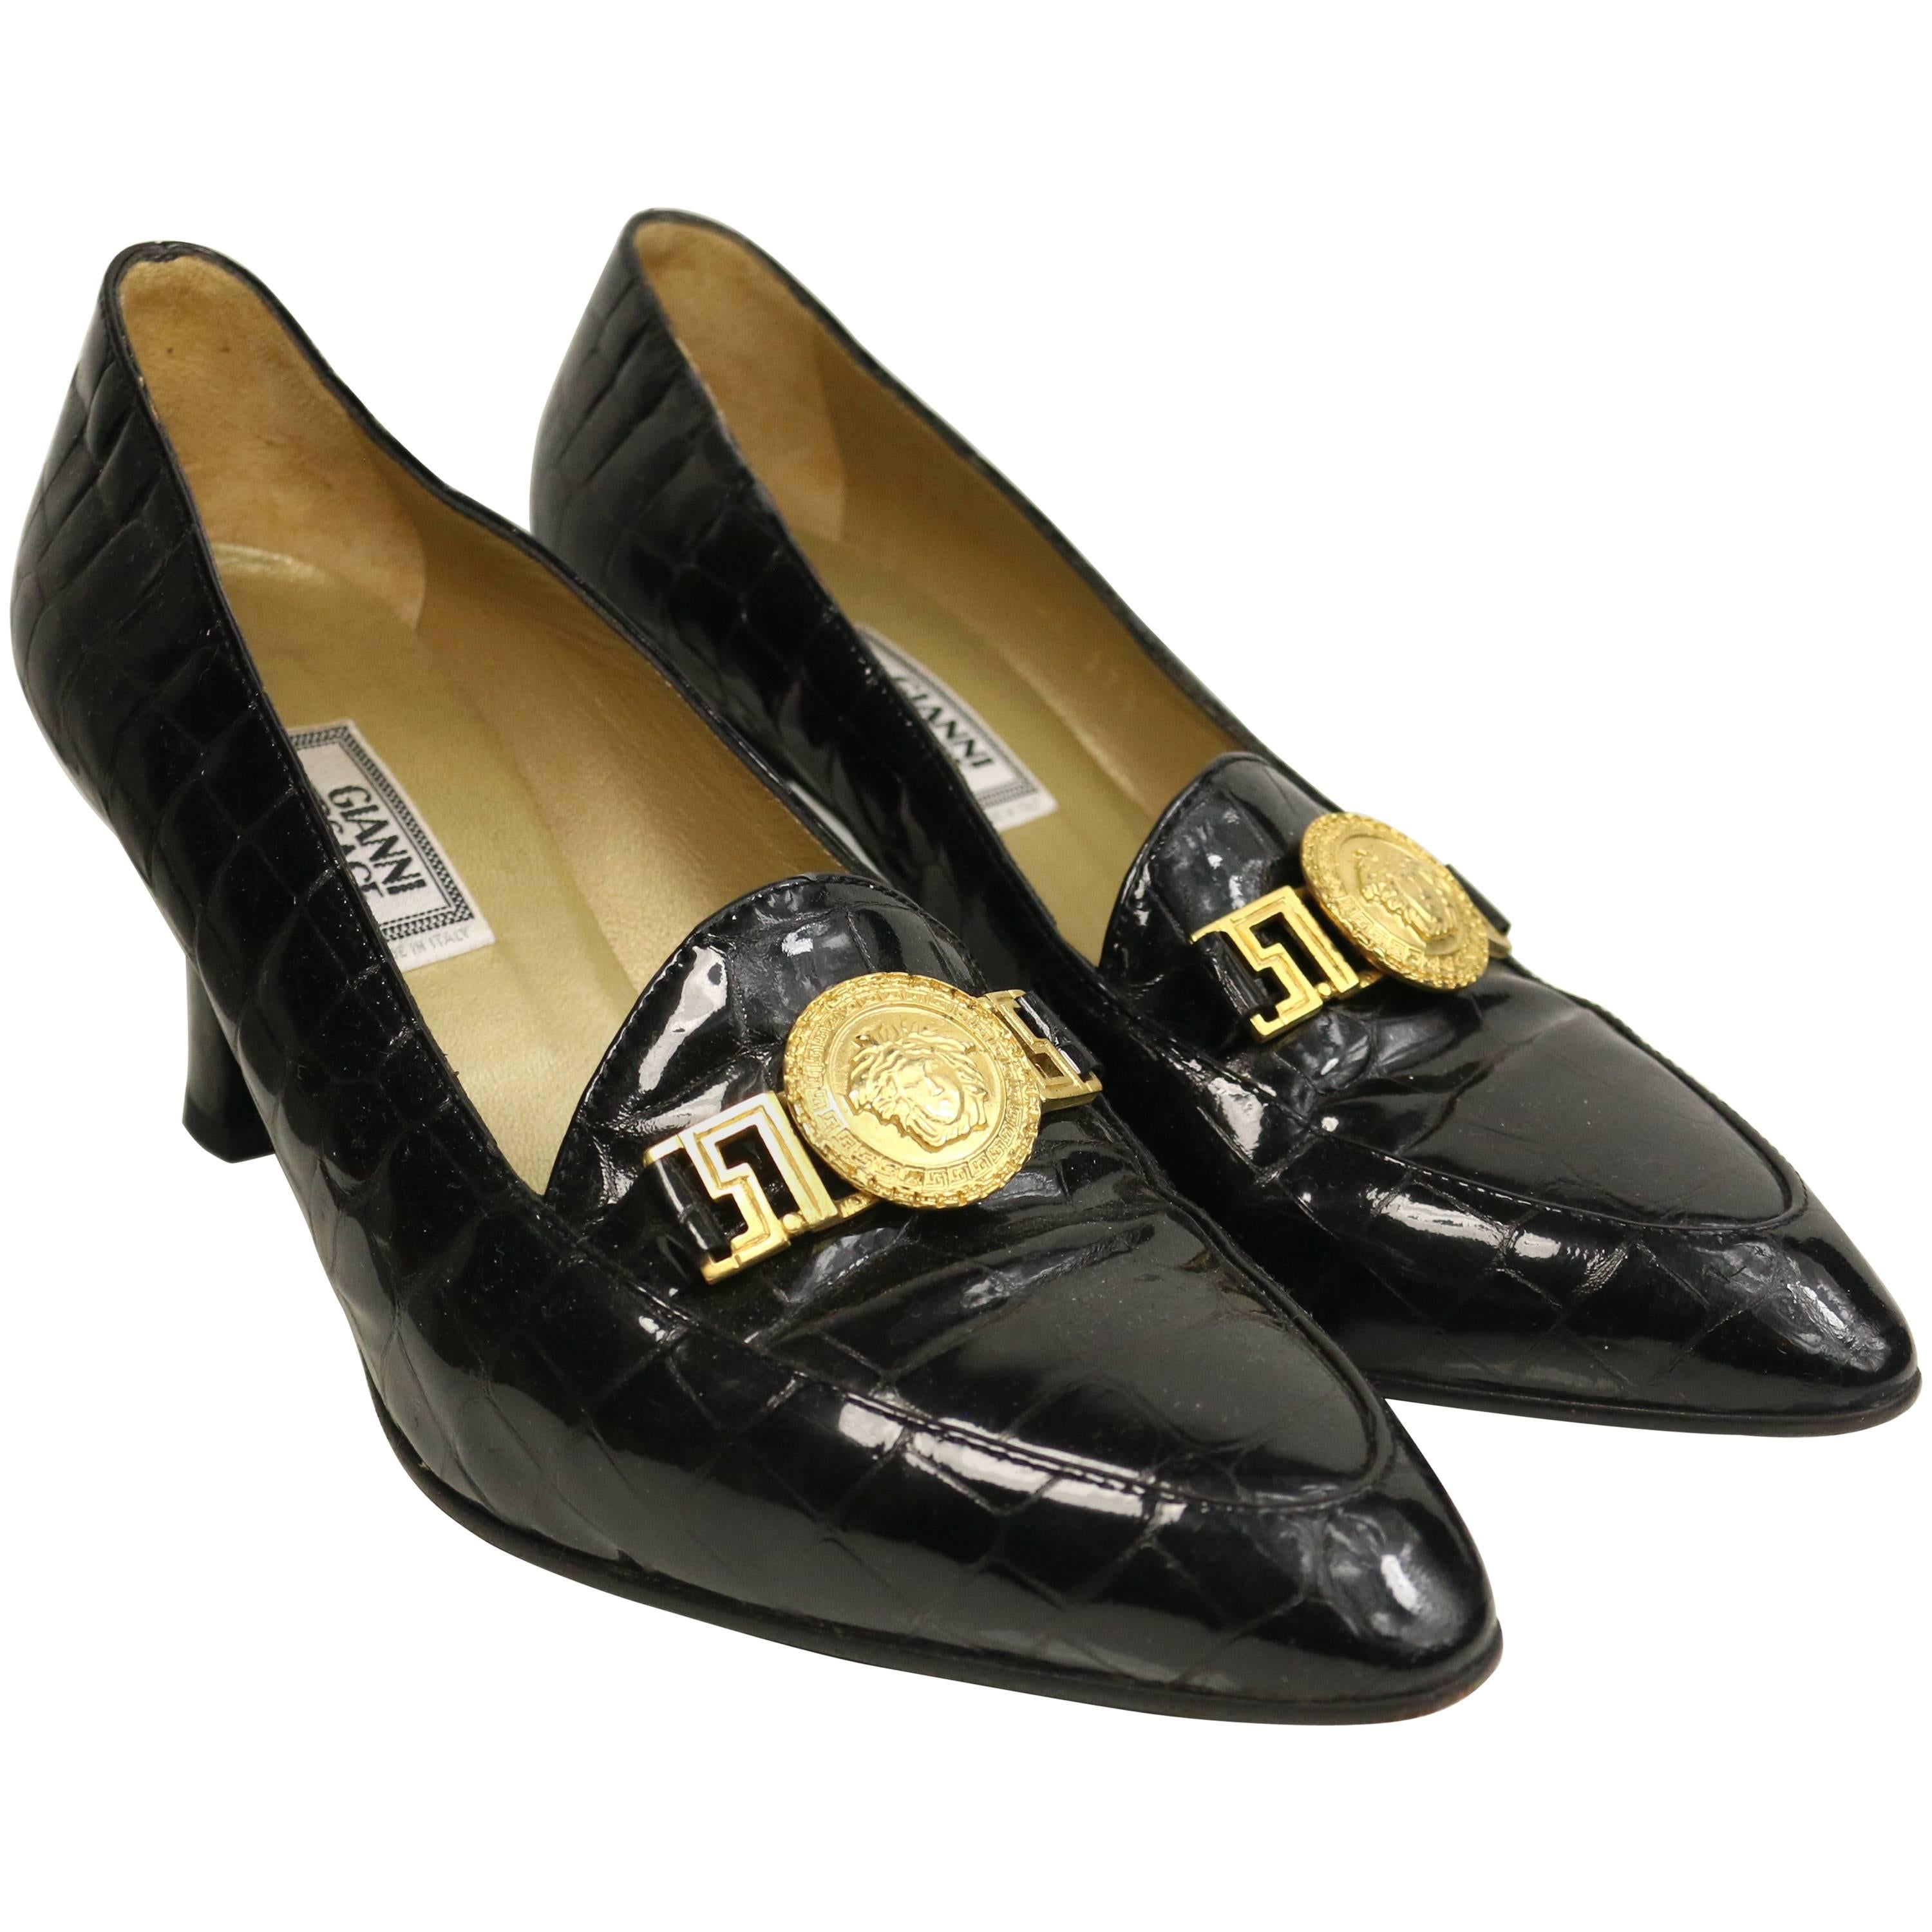 Schoenen damesschoenen Instappers Loafers Gianni Versace vintage gouden loafers maat 39 RARE 